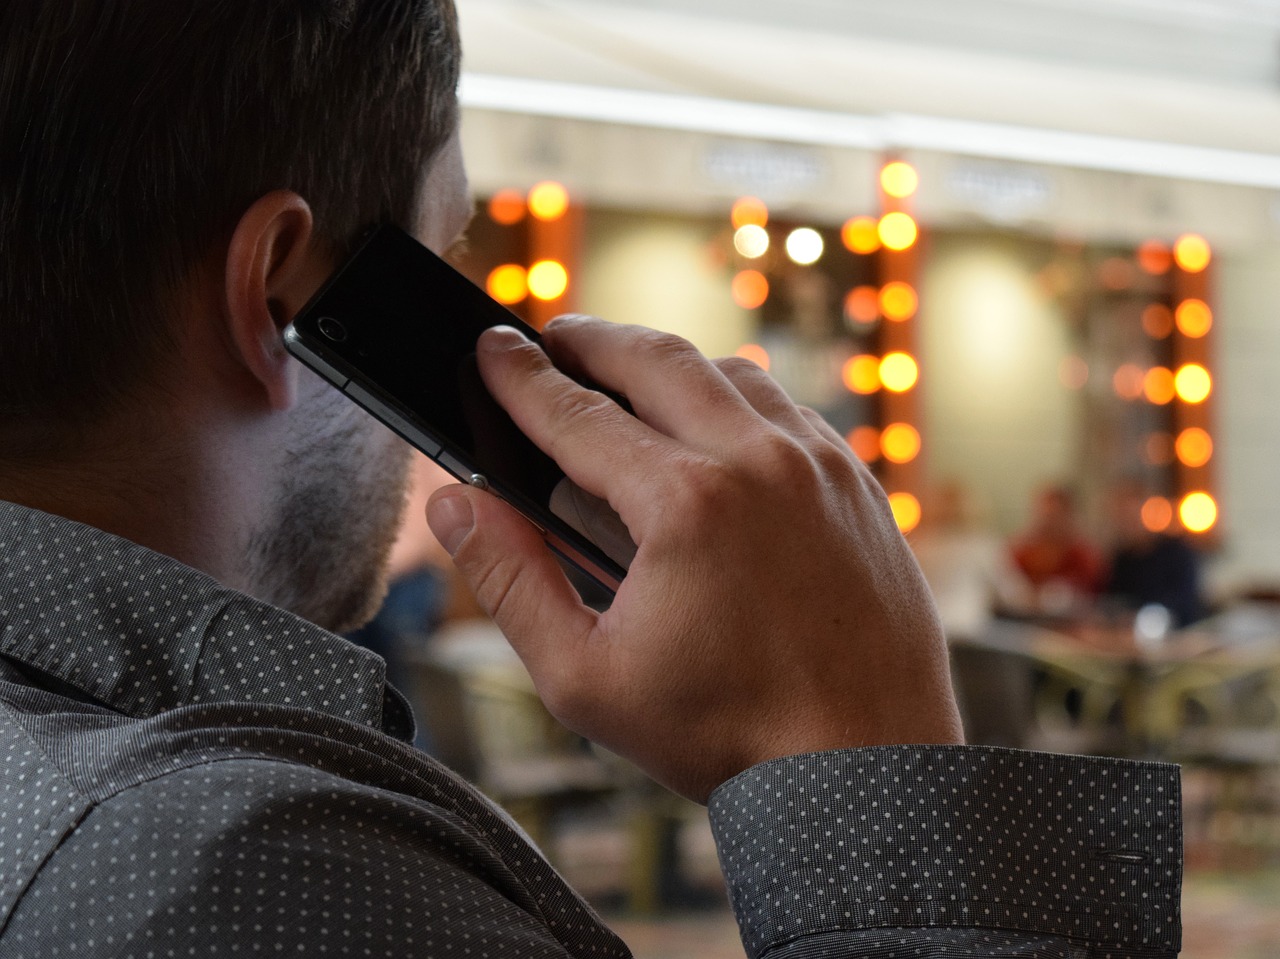 Niže cijene roaminga od ponedjeljka: Minut poziva ka CG mrežama iz regiona 9,5 centi, SMS poruka 3 centa